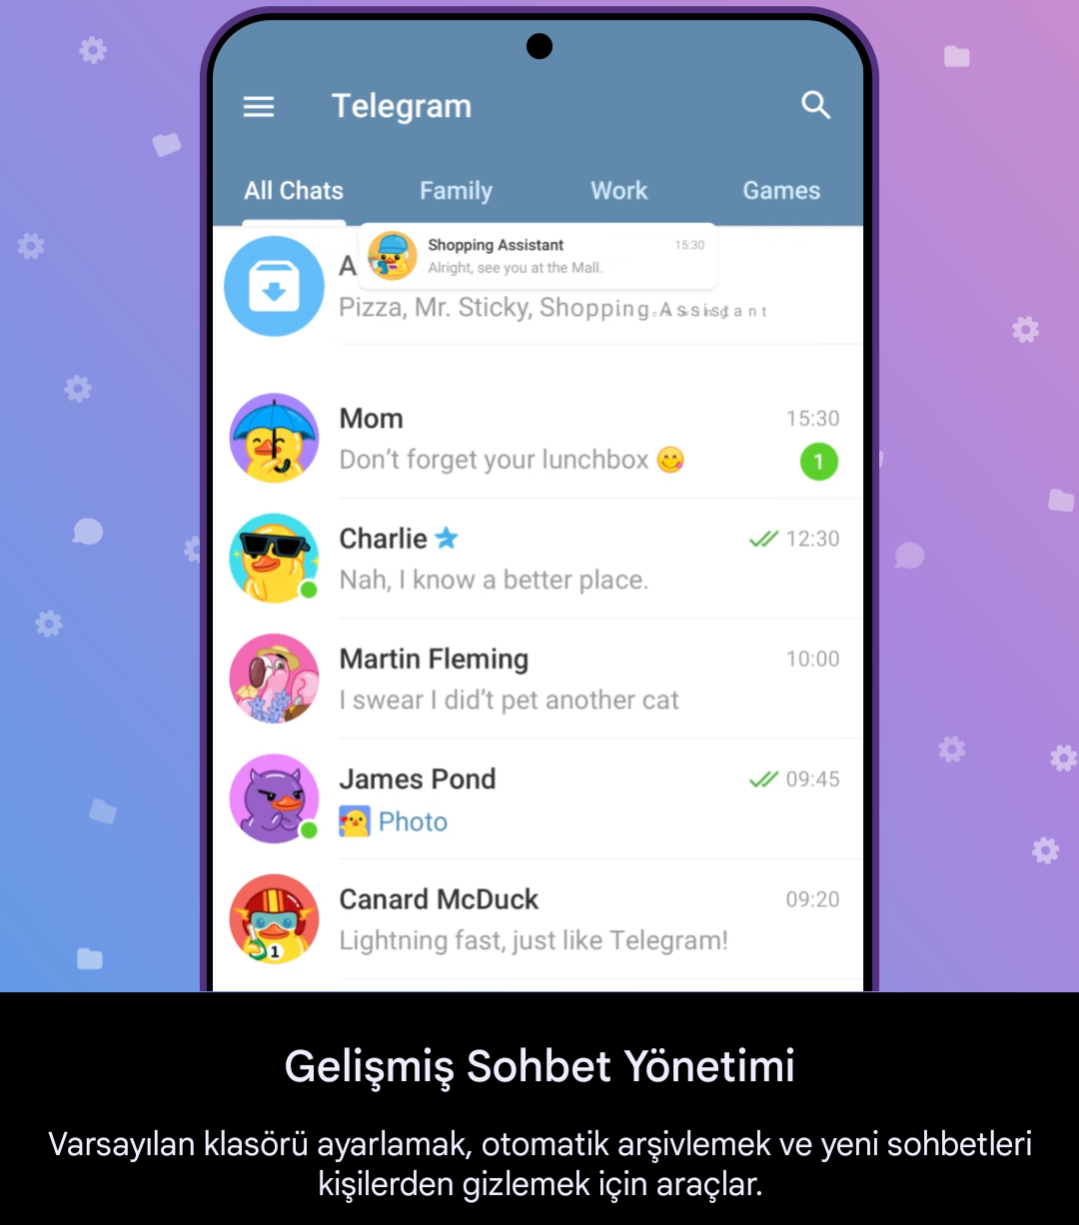 Telegram Premium, Gelişmiş Sohbet Yönetimi